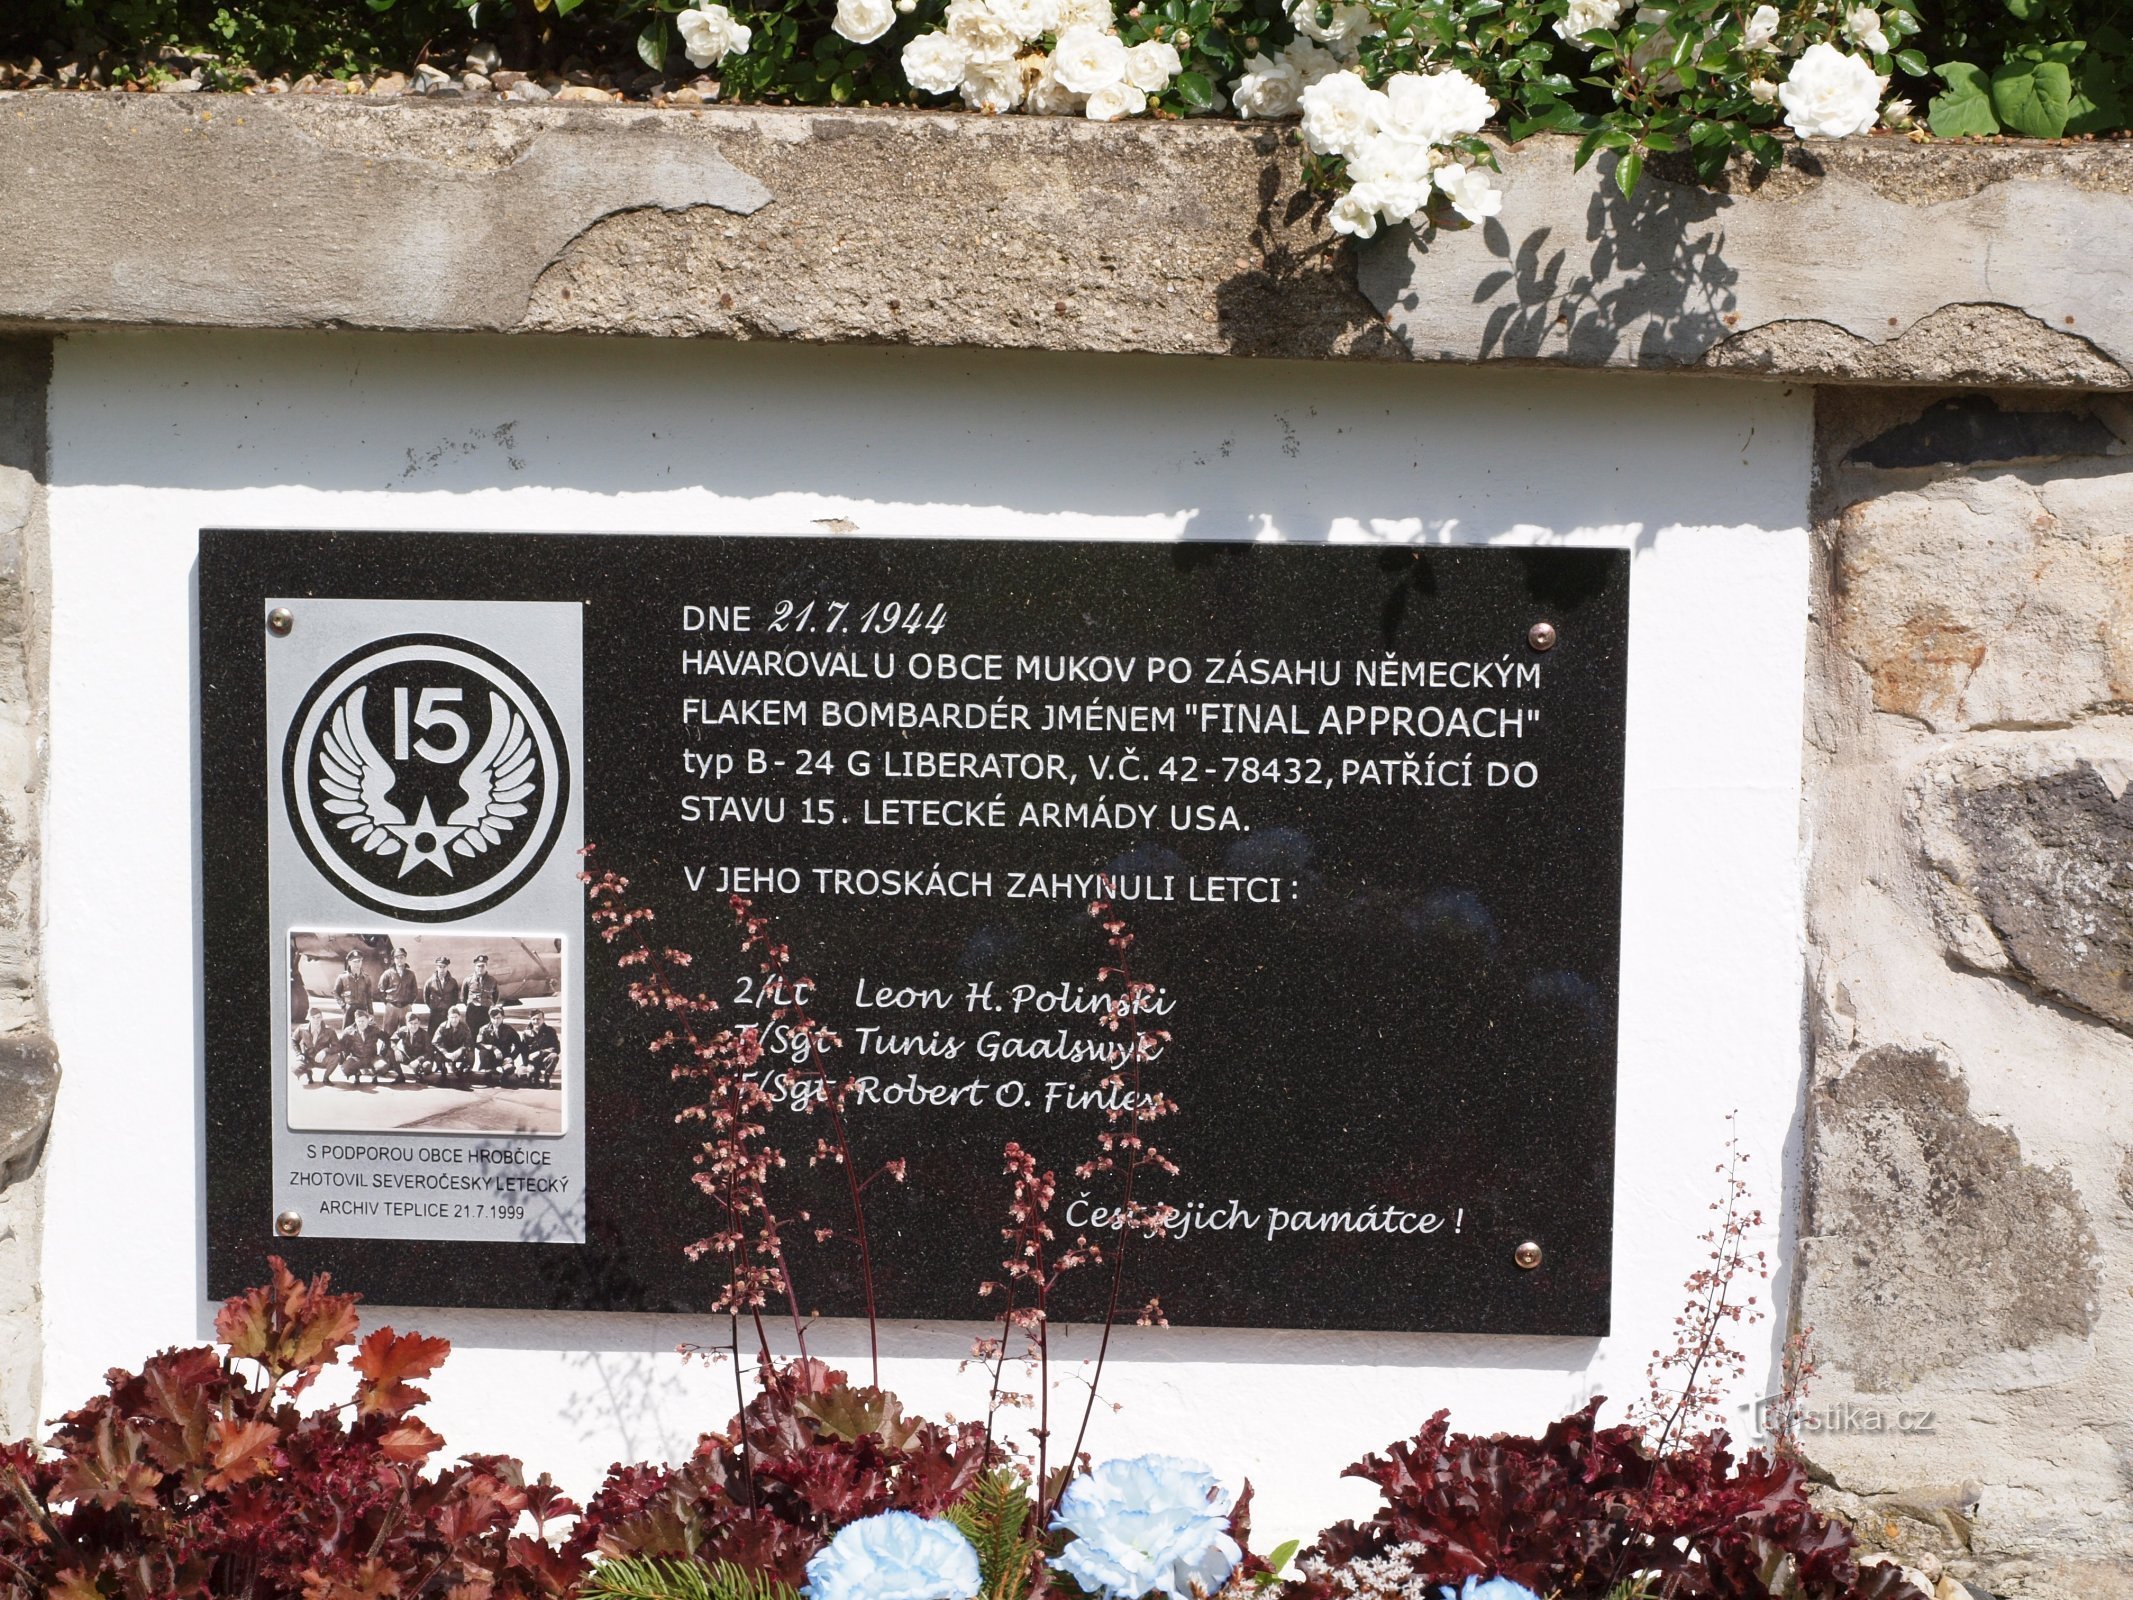 Памятник американским летчикам в Мукове.